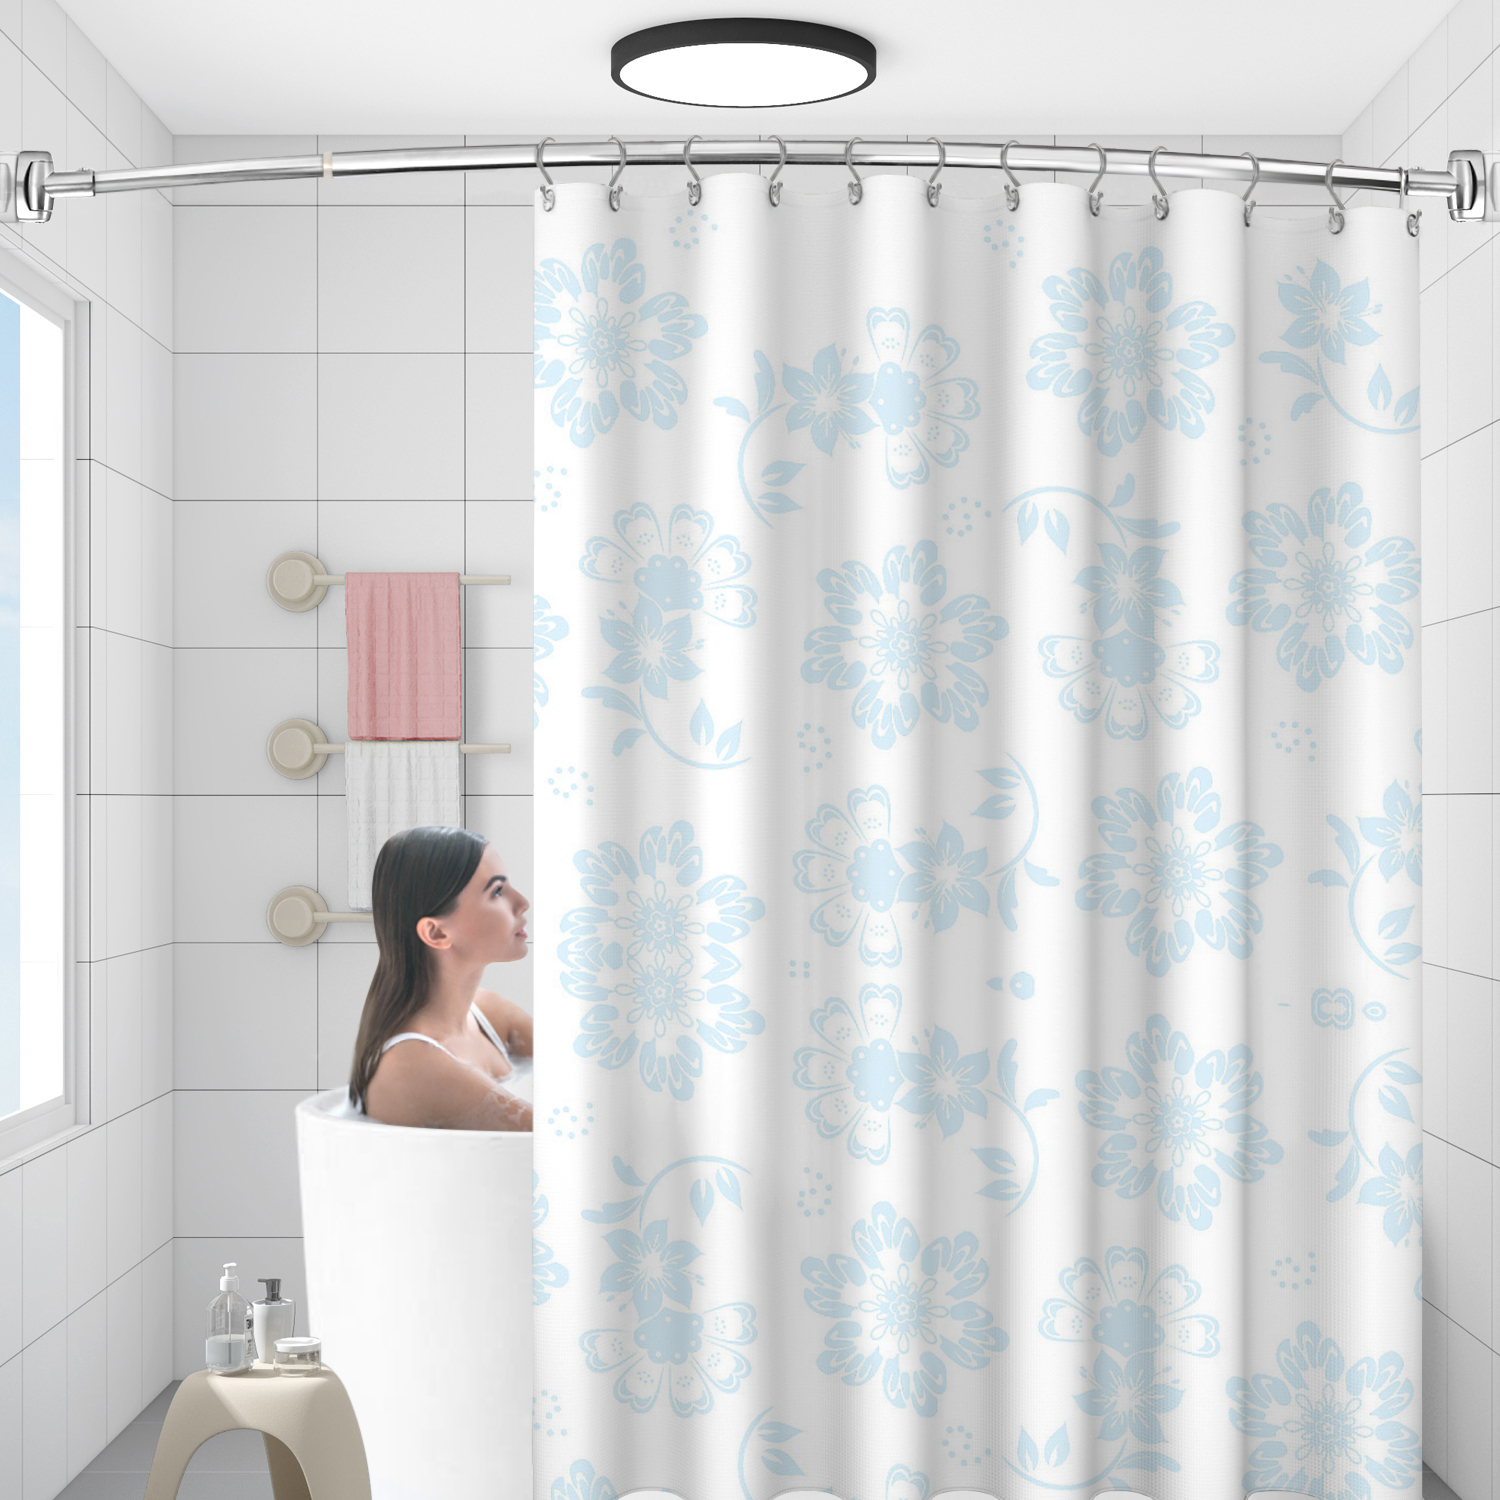 Squisite aste per doccia in acciaio inossidabile con curvatura arrotondata regolabile cromata personalizzate per vasca da bagno